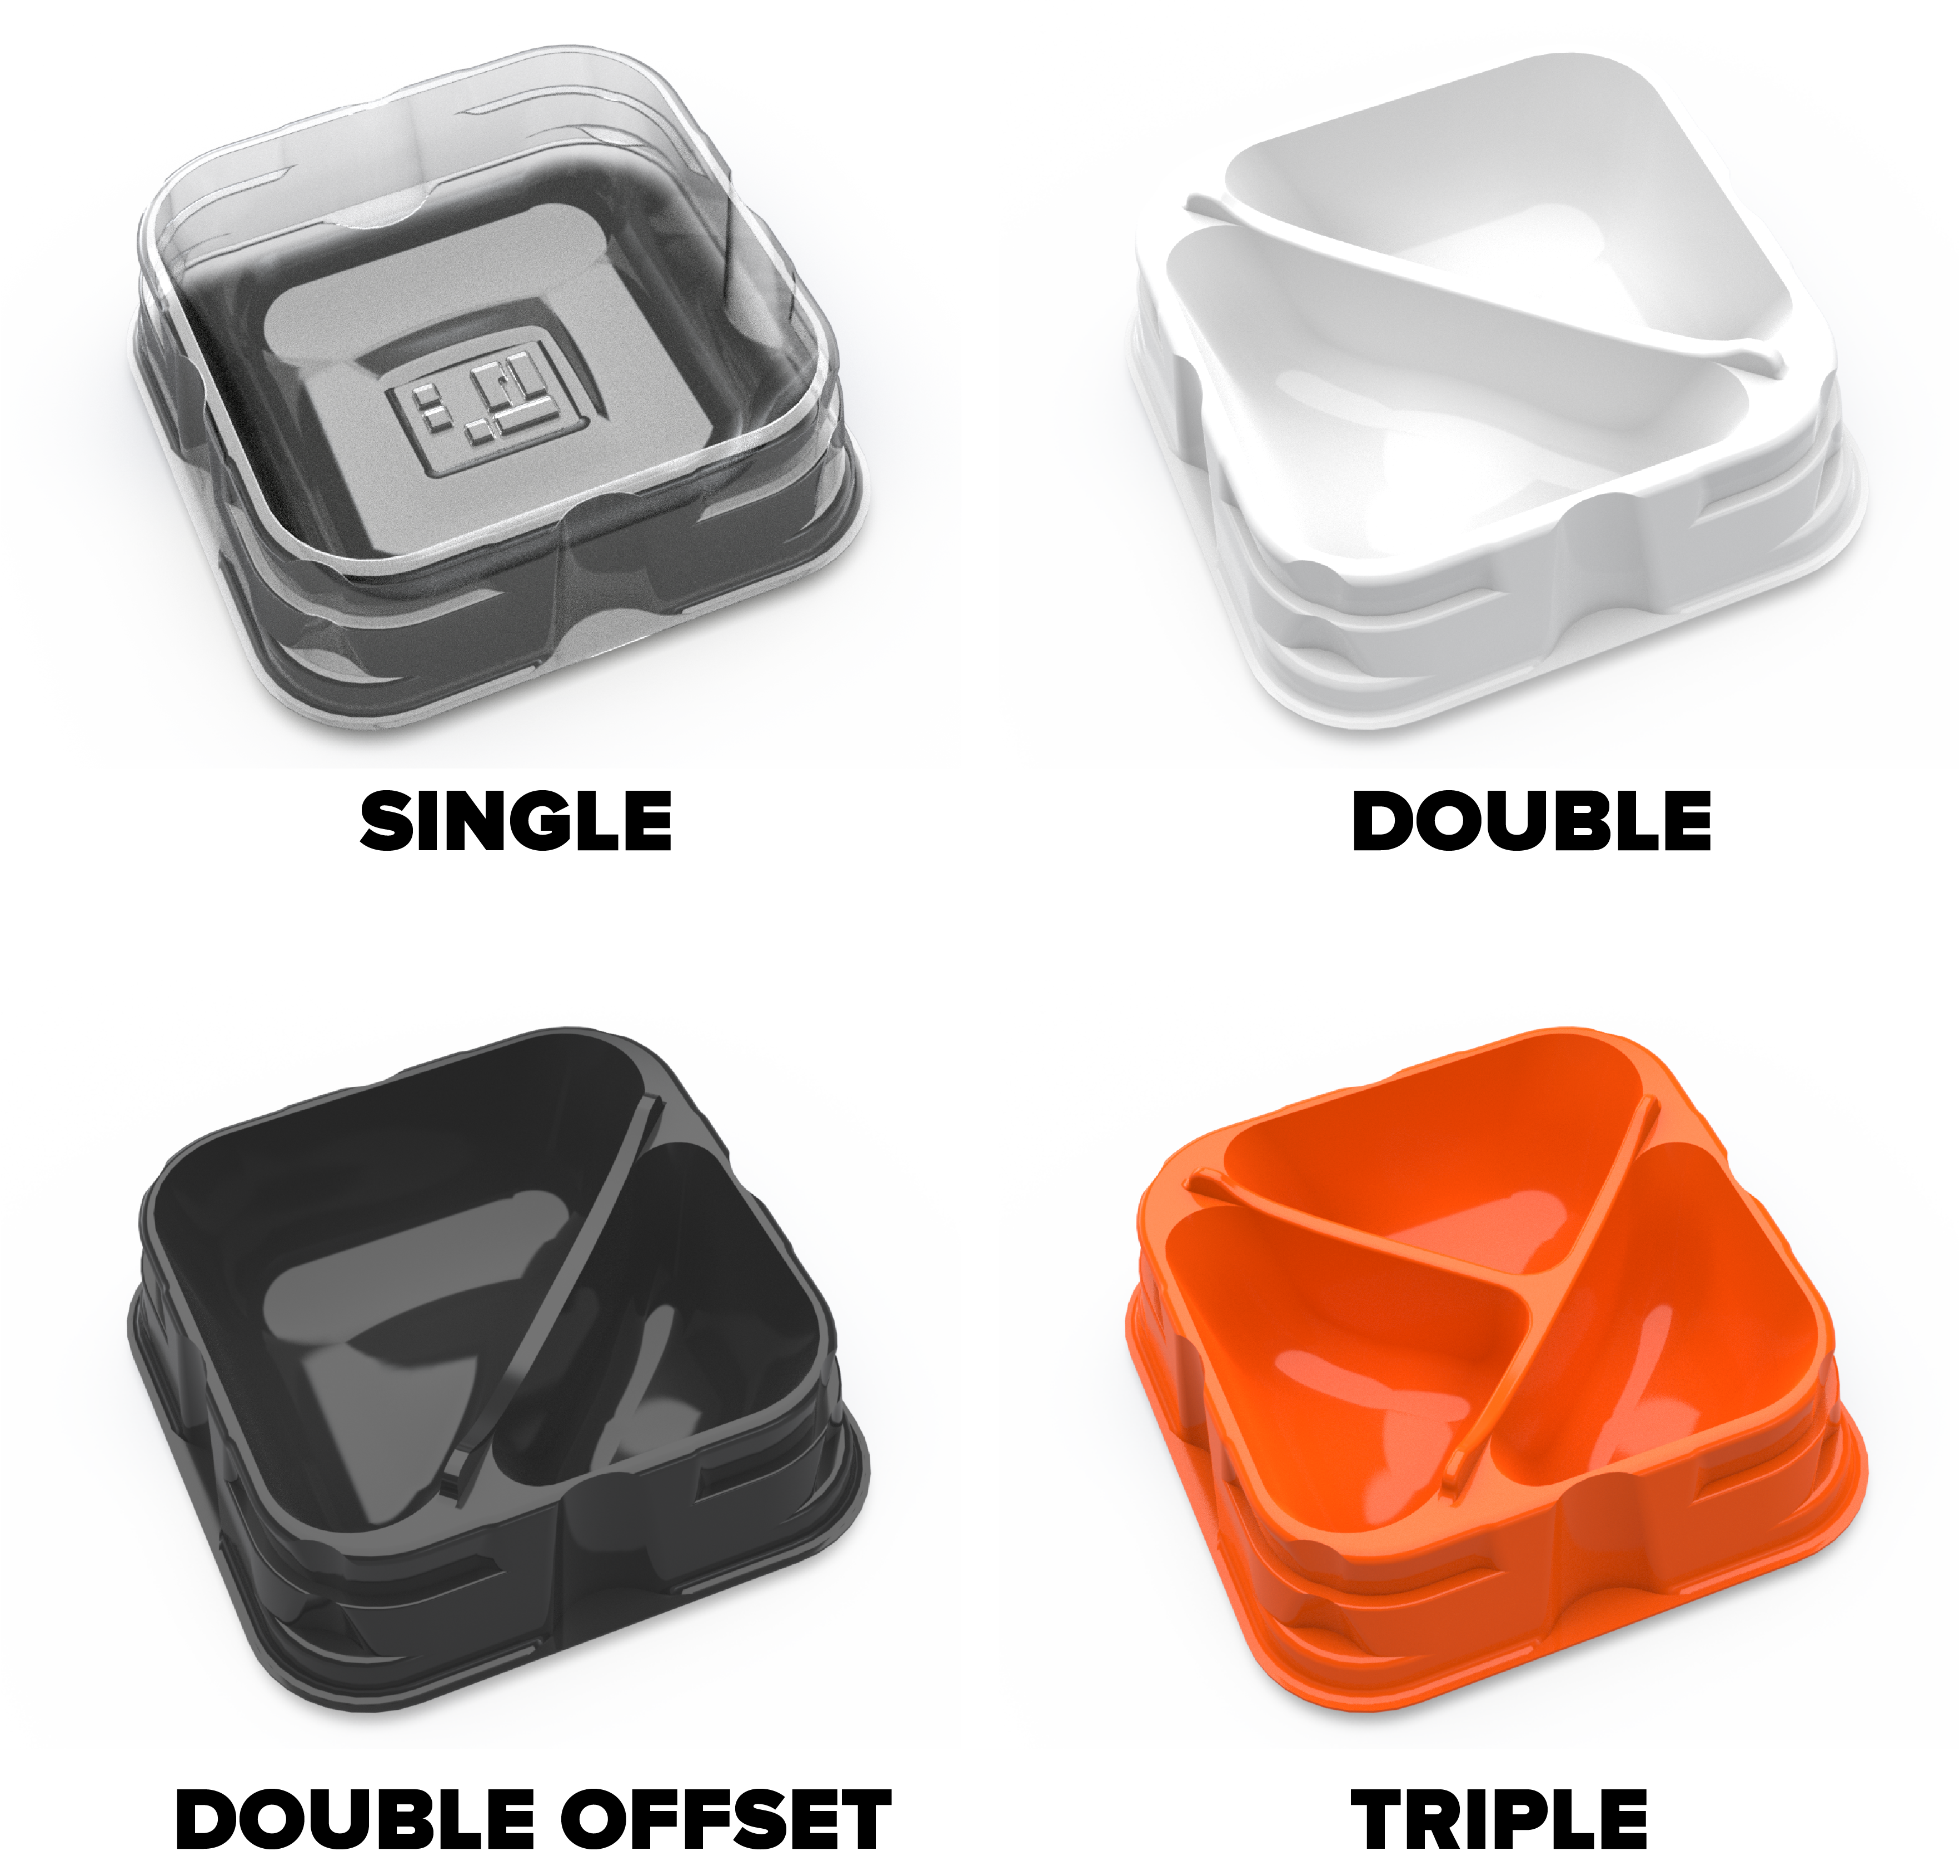 GeekUp Bit Set: Cubitos - Storage Box Set – BoardGameGeek Store